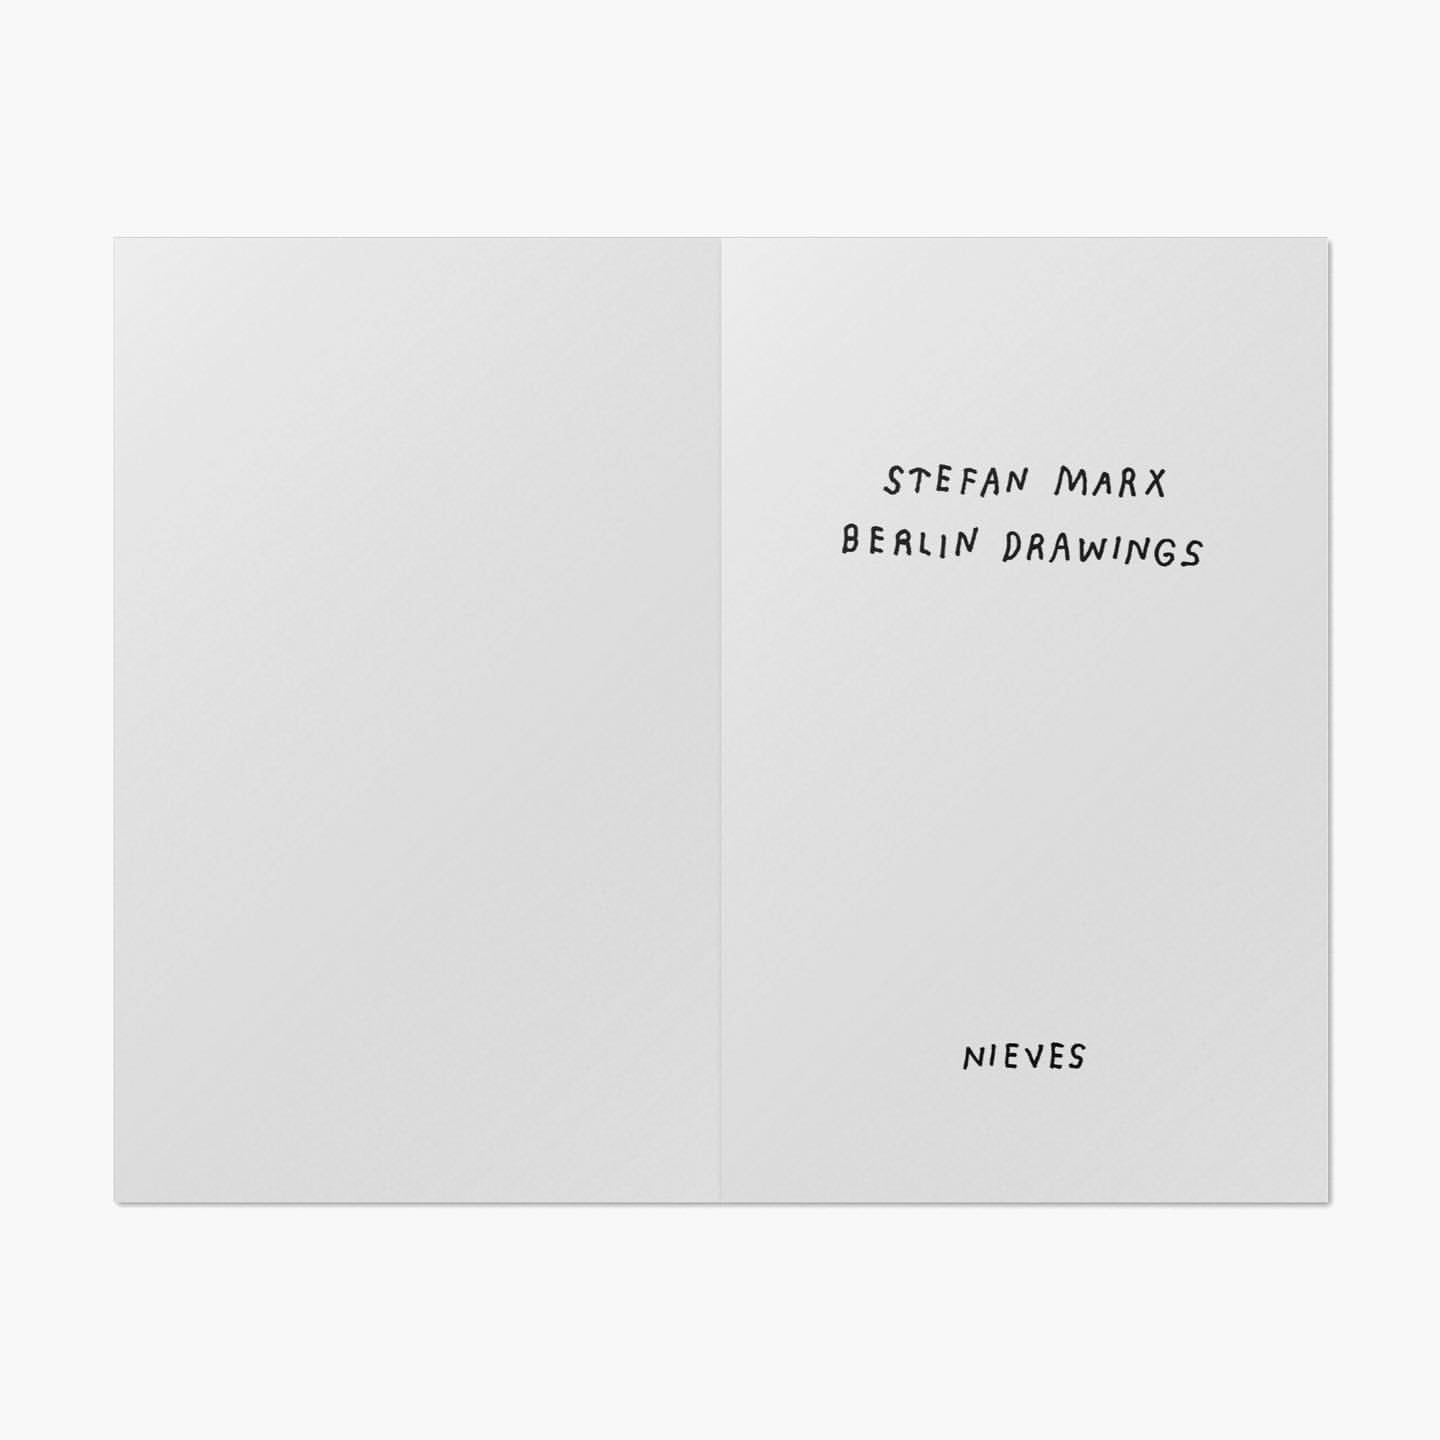 Stefan Marx: Berlin Drawings